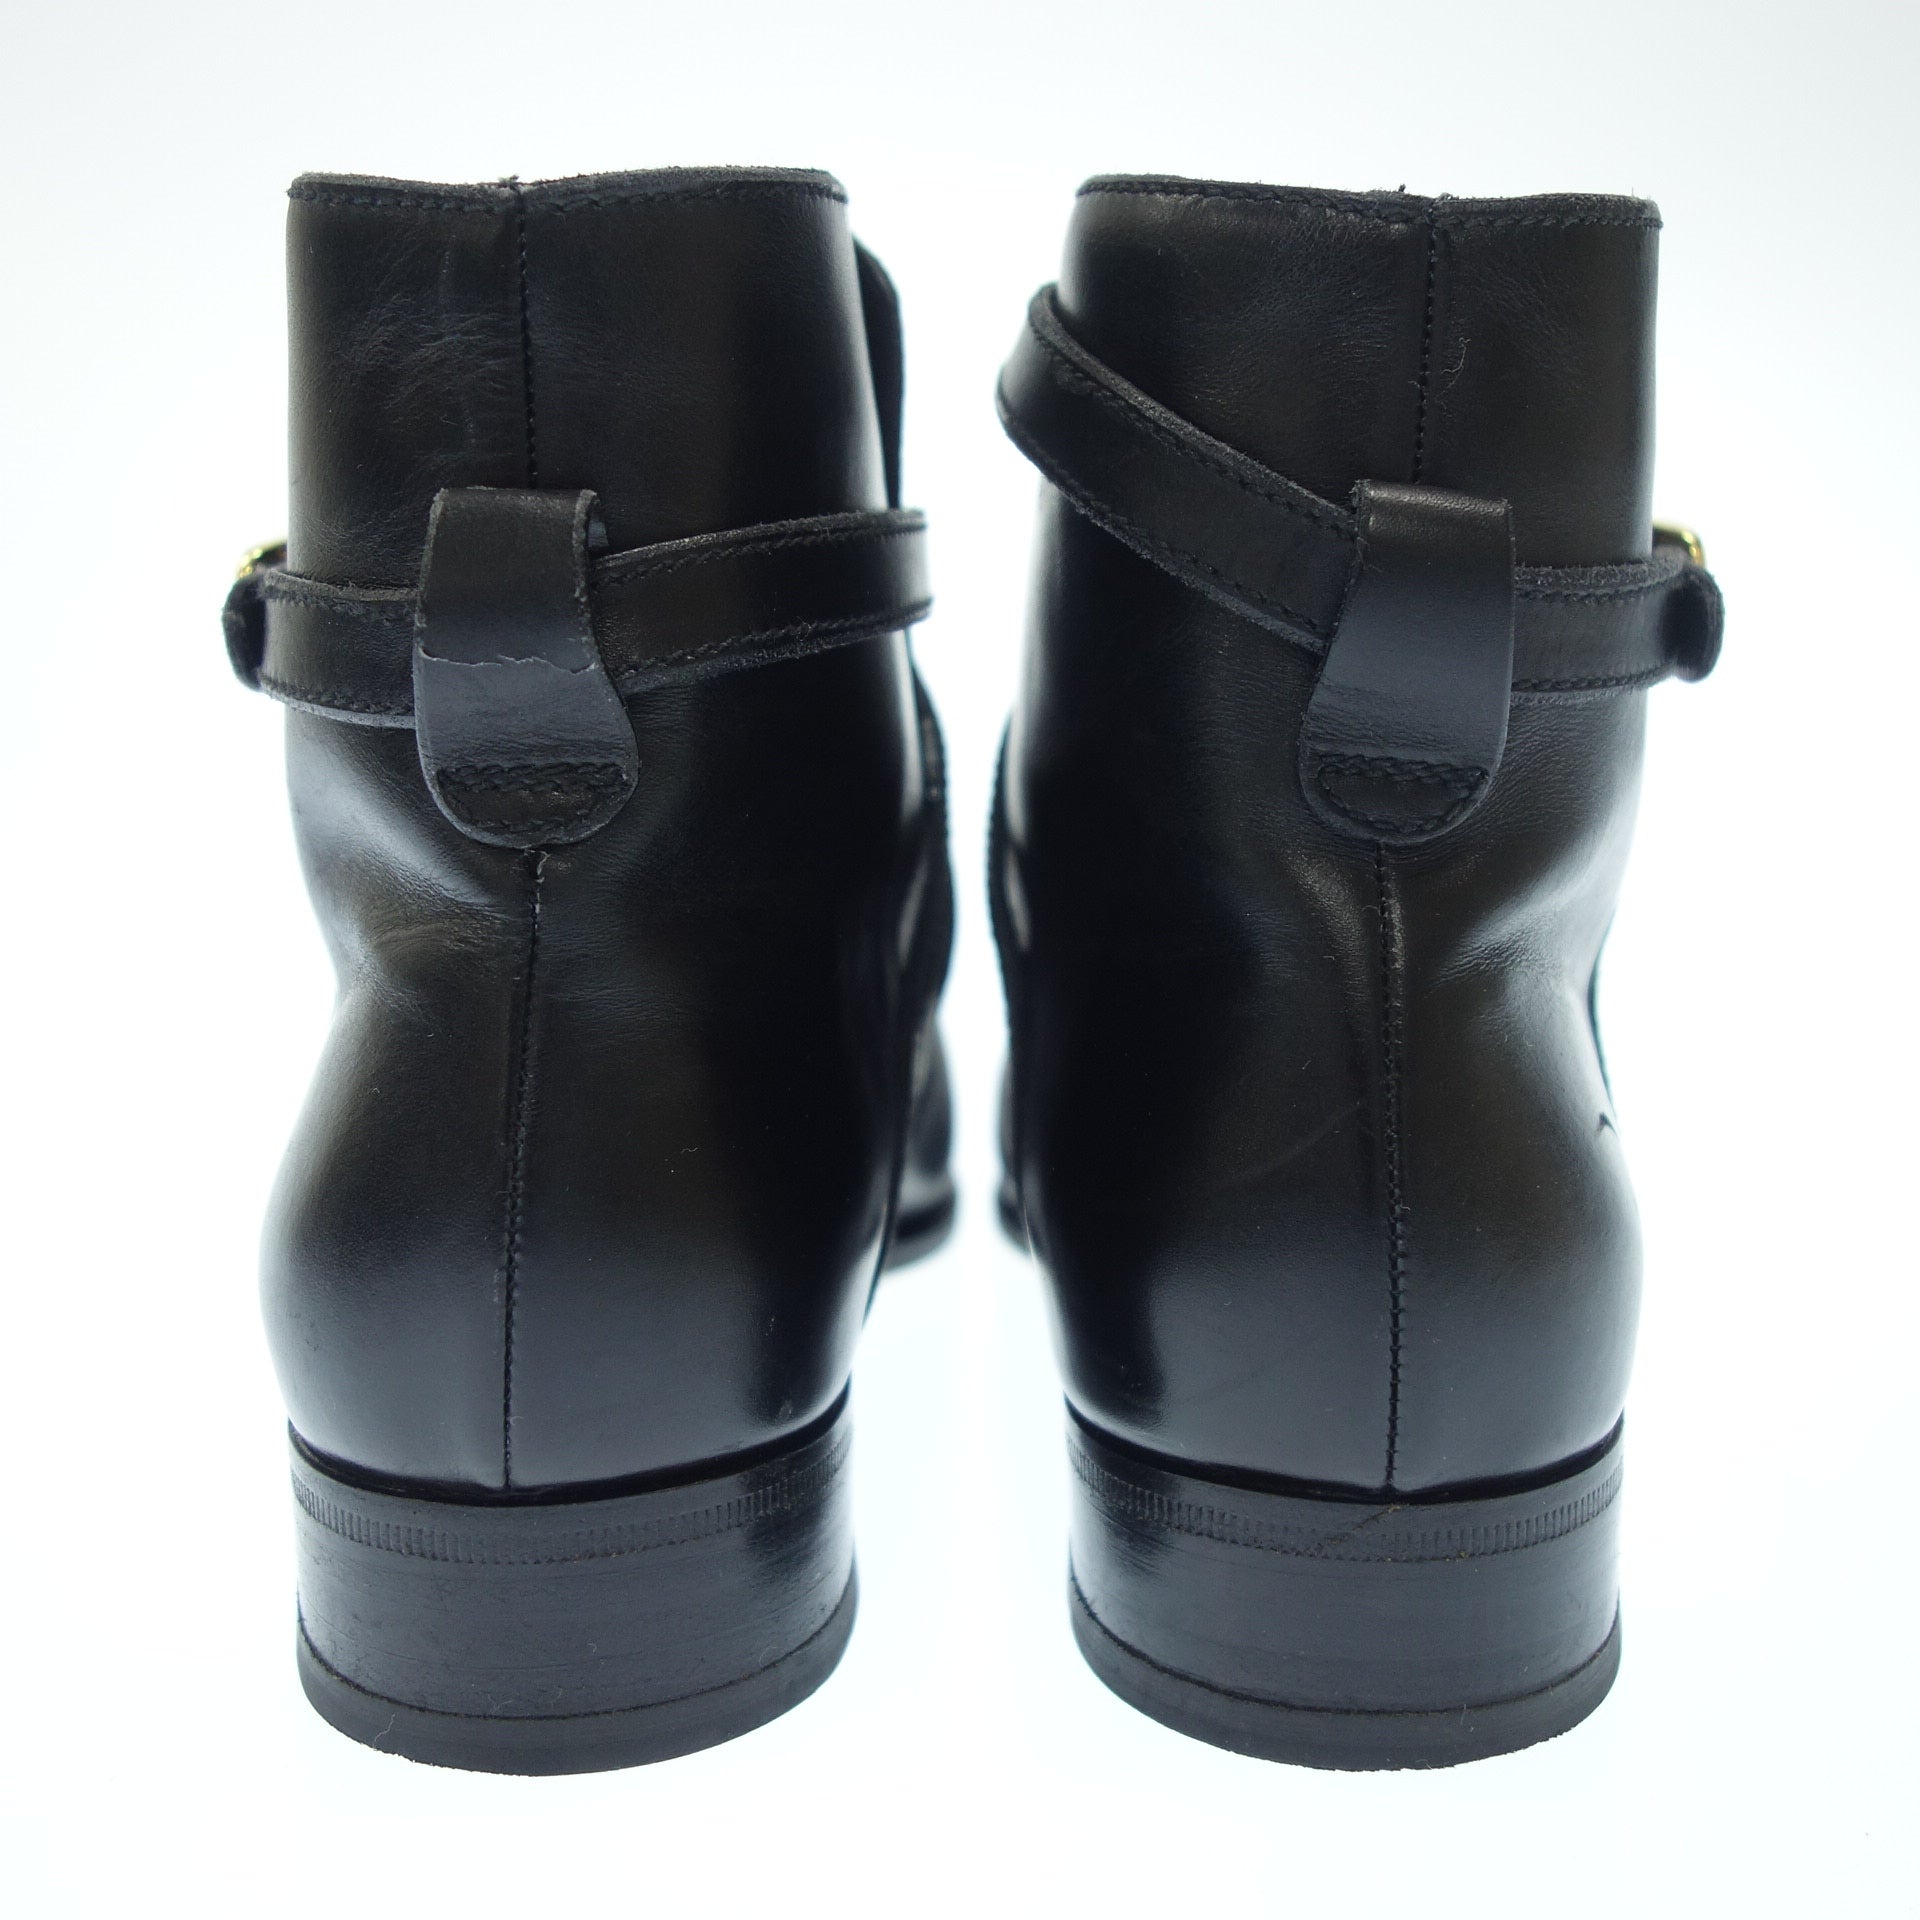 購入を検討しております美品タニノクリスチー TANINO CRISCI ショートブーツ 35.5 黒